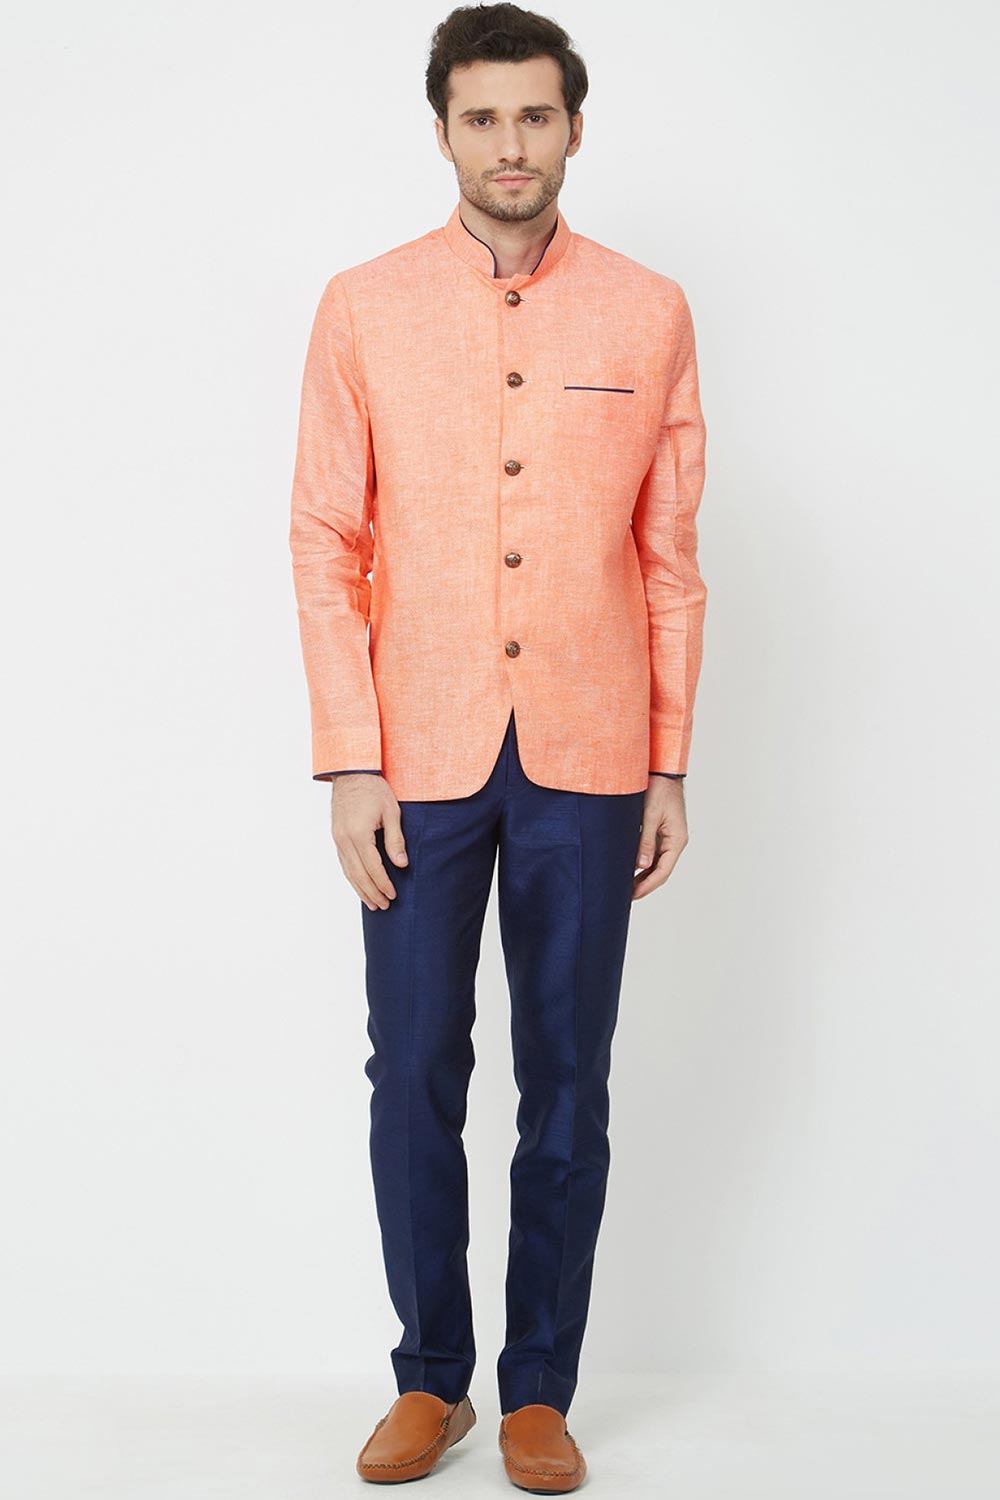 Buy Men's Linen solid Jodhpuri Set in Orange Online